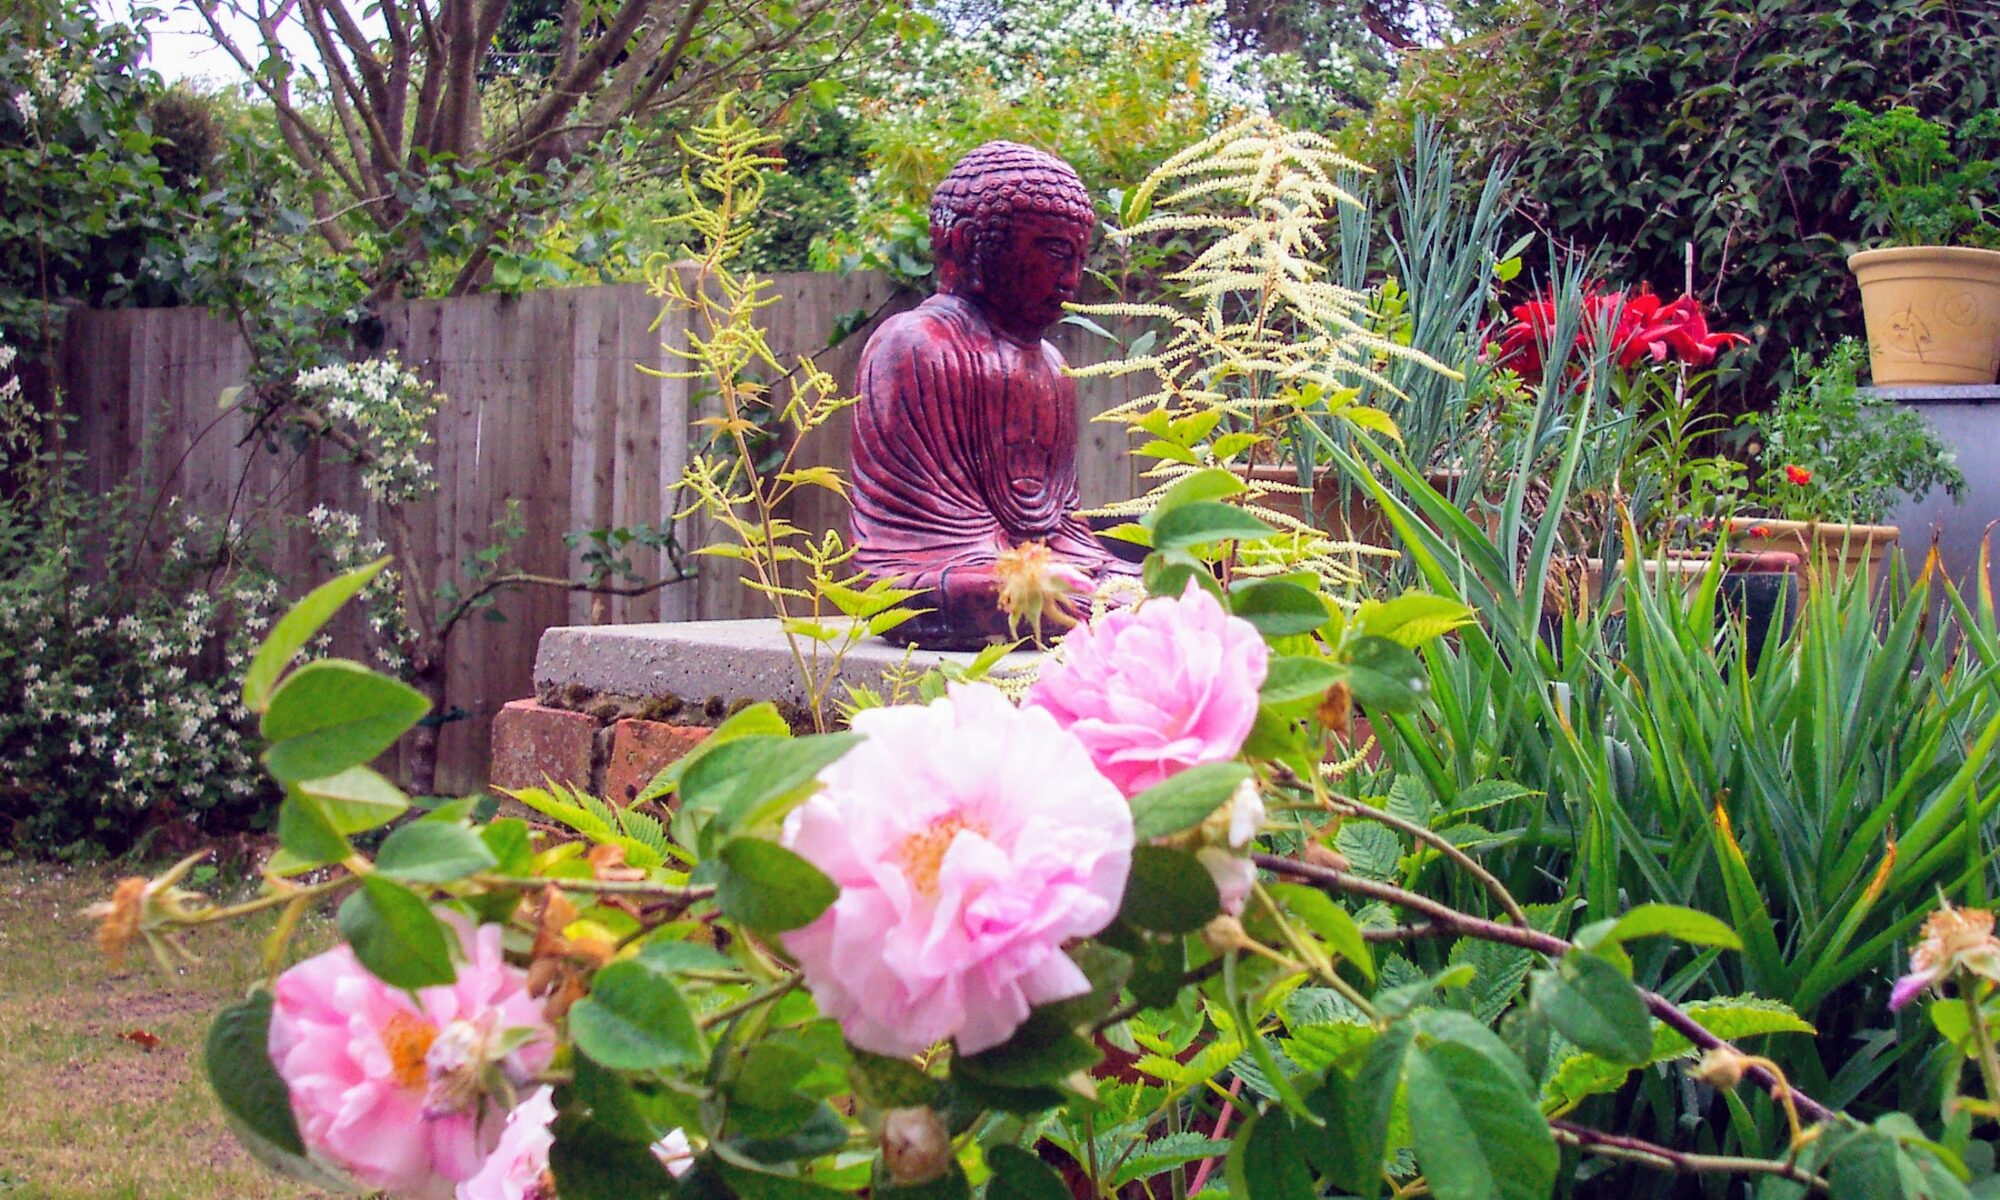 Buddha statue amongst Roses